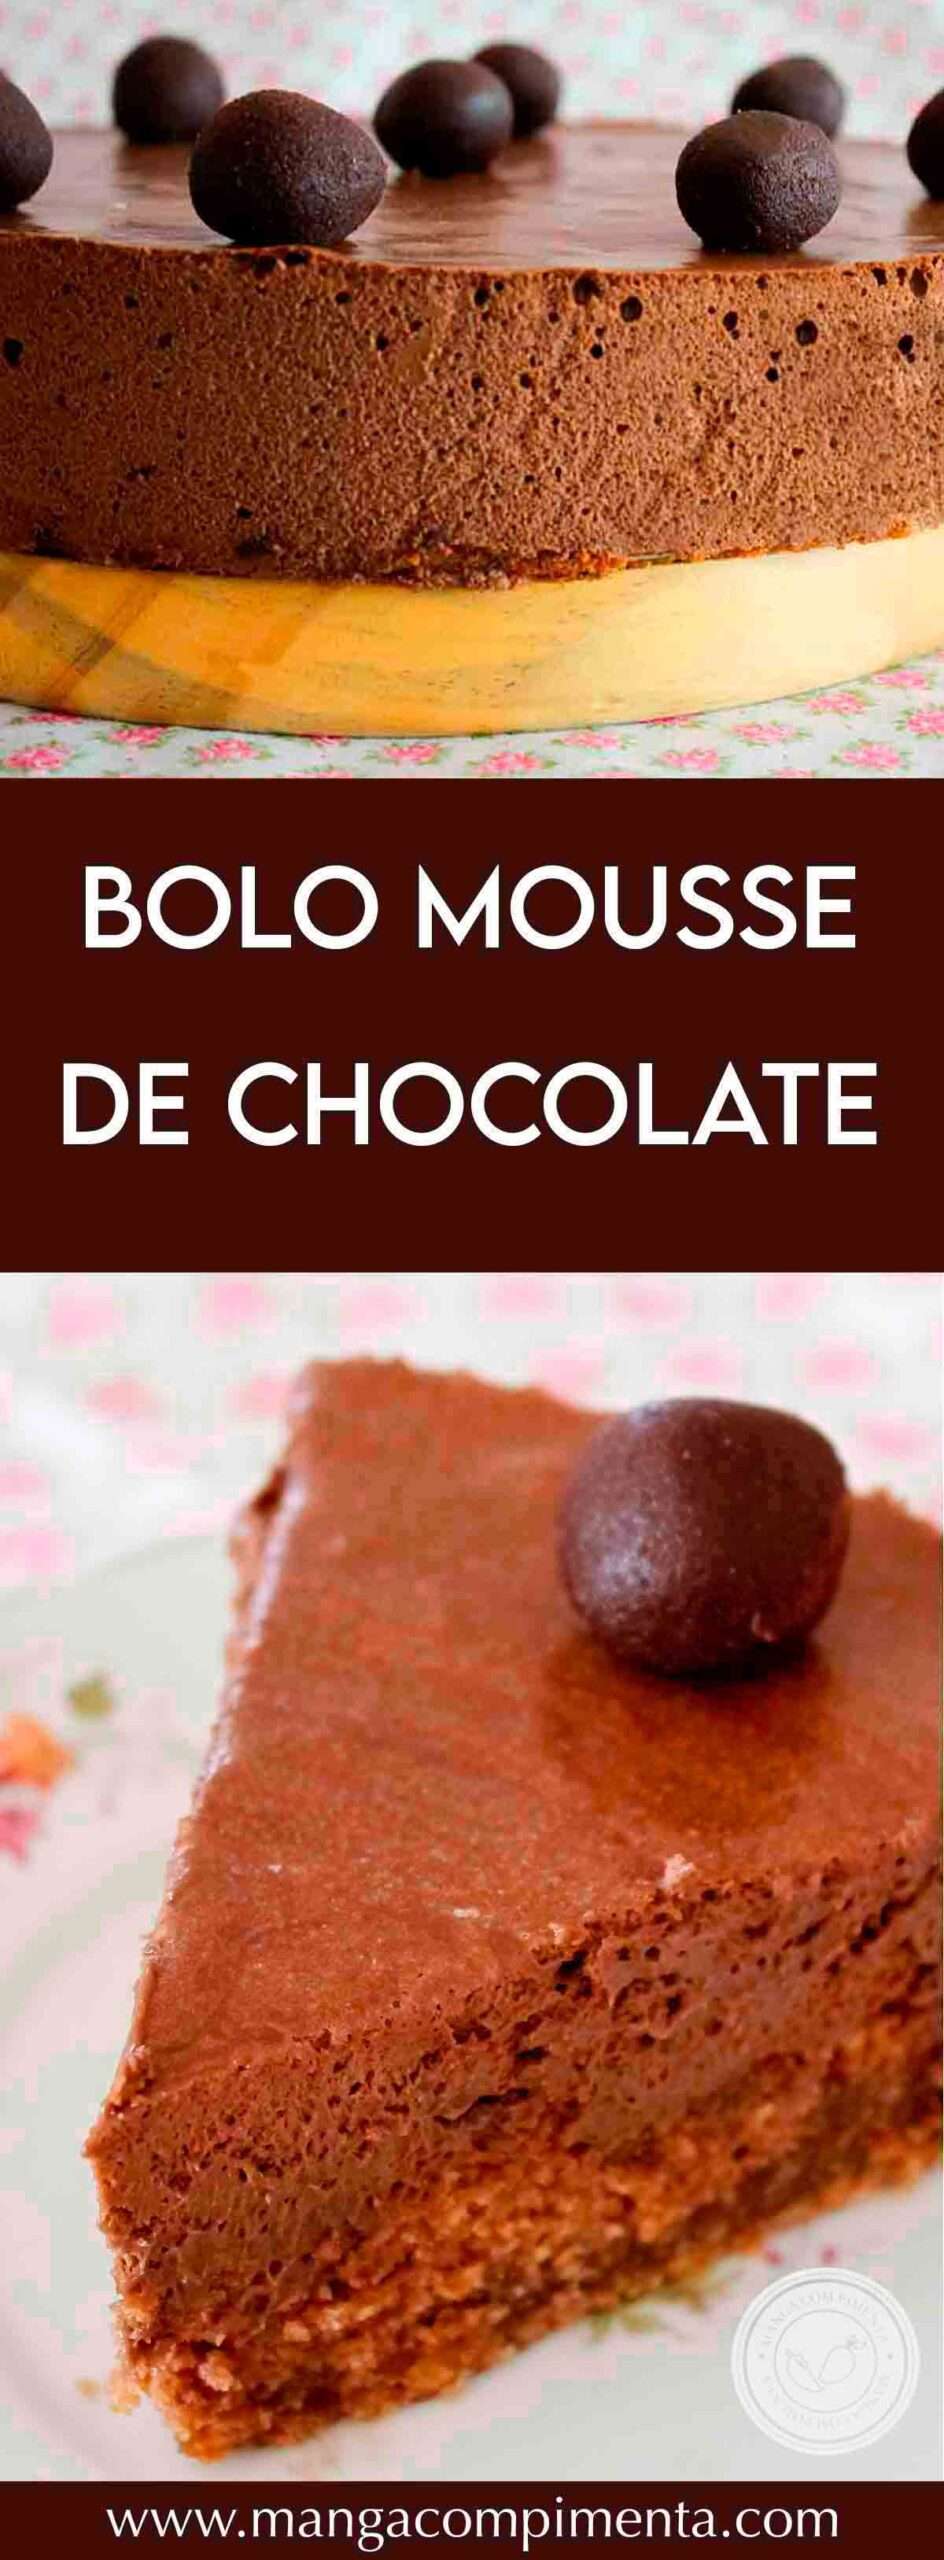 Receita de Bolo Mousse de Chocolate - prepare uma sobremesa deliciosa para o almoço de páscoa.